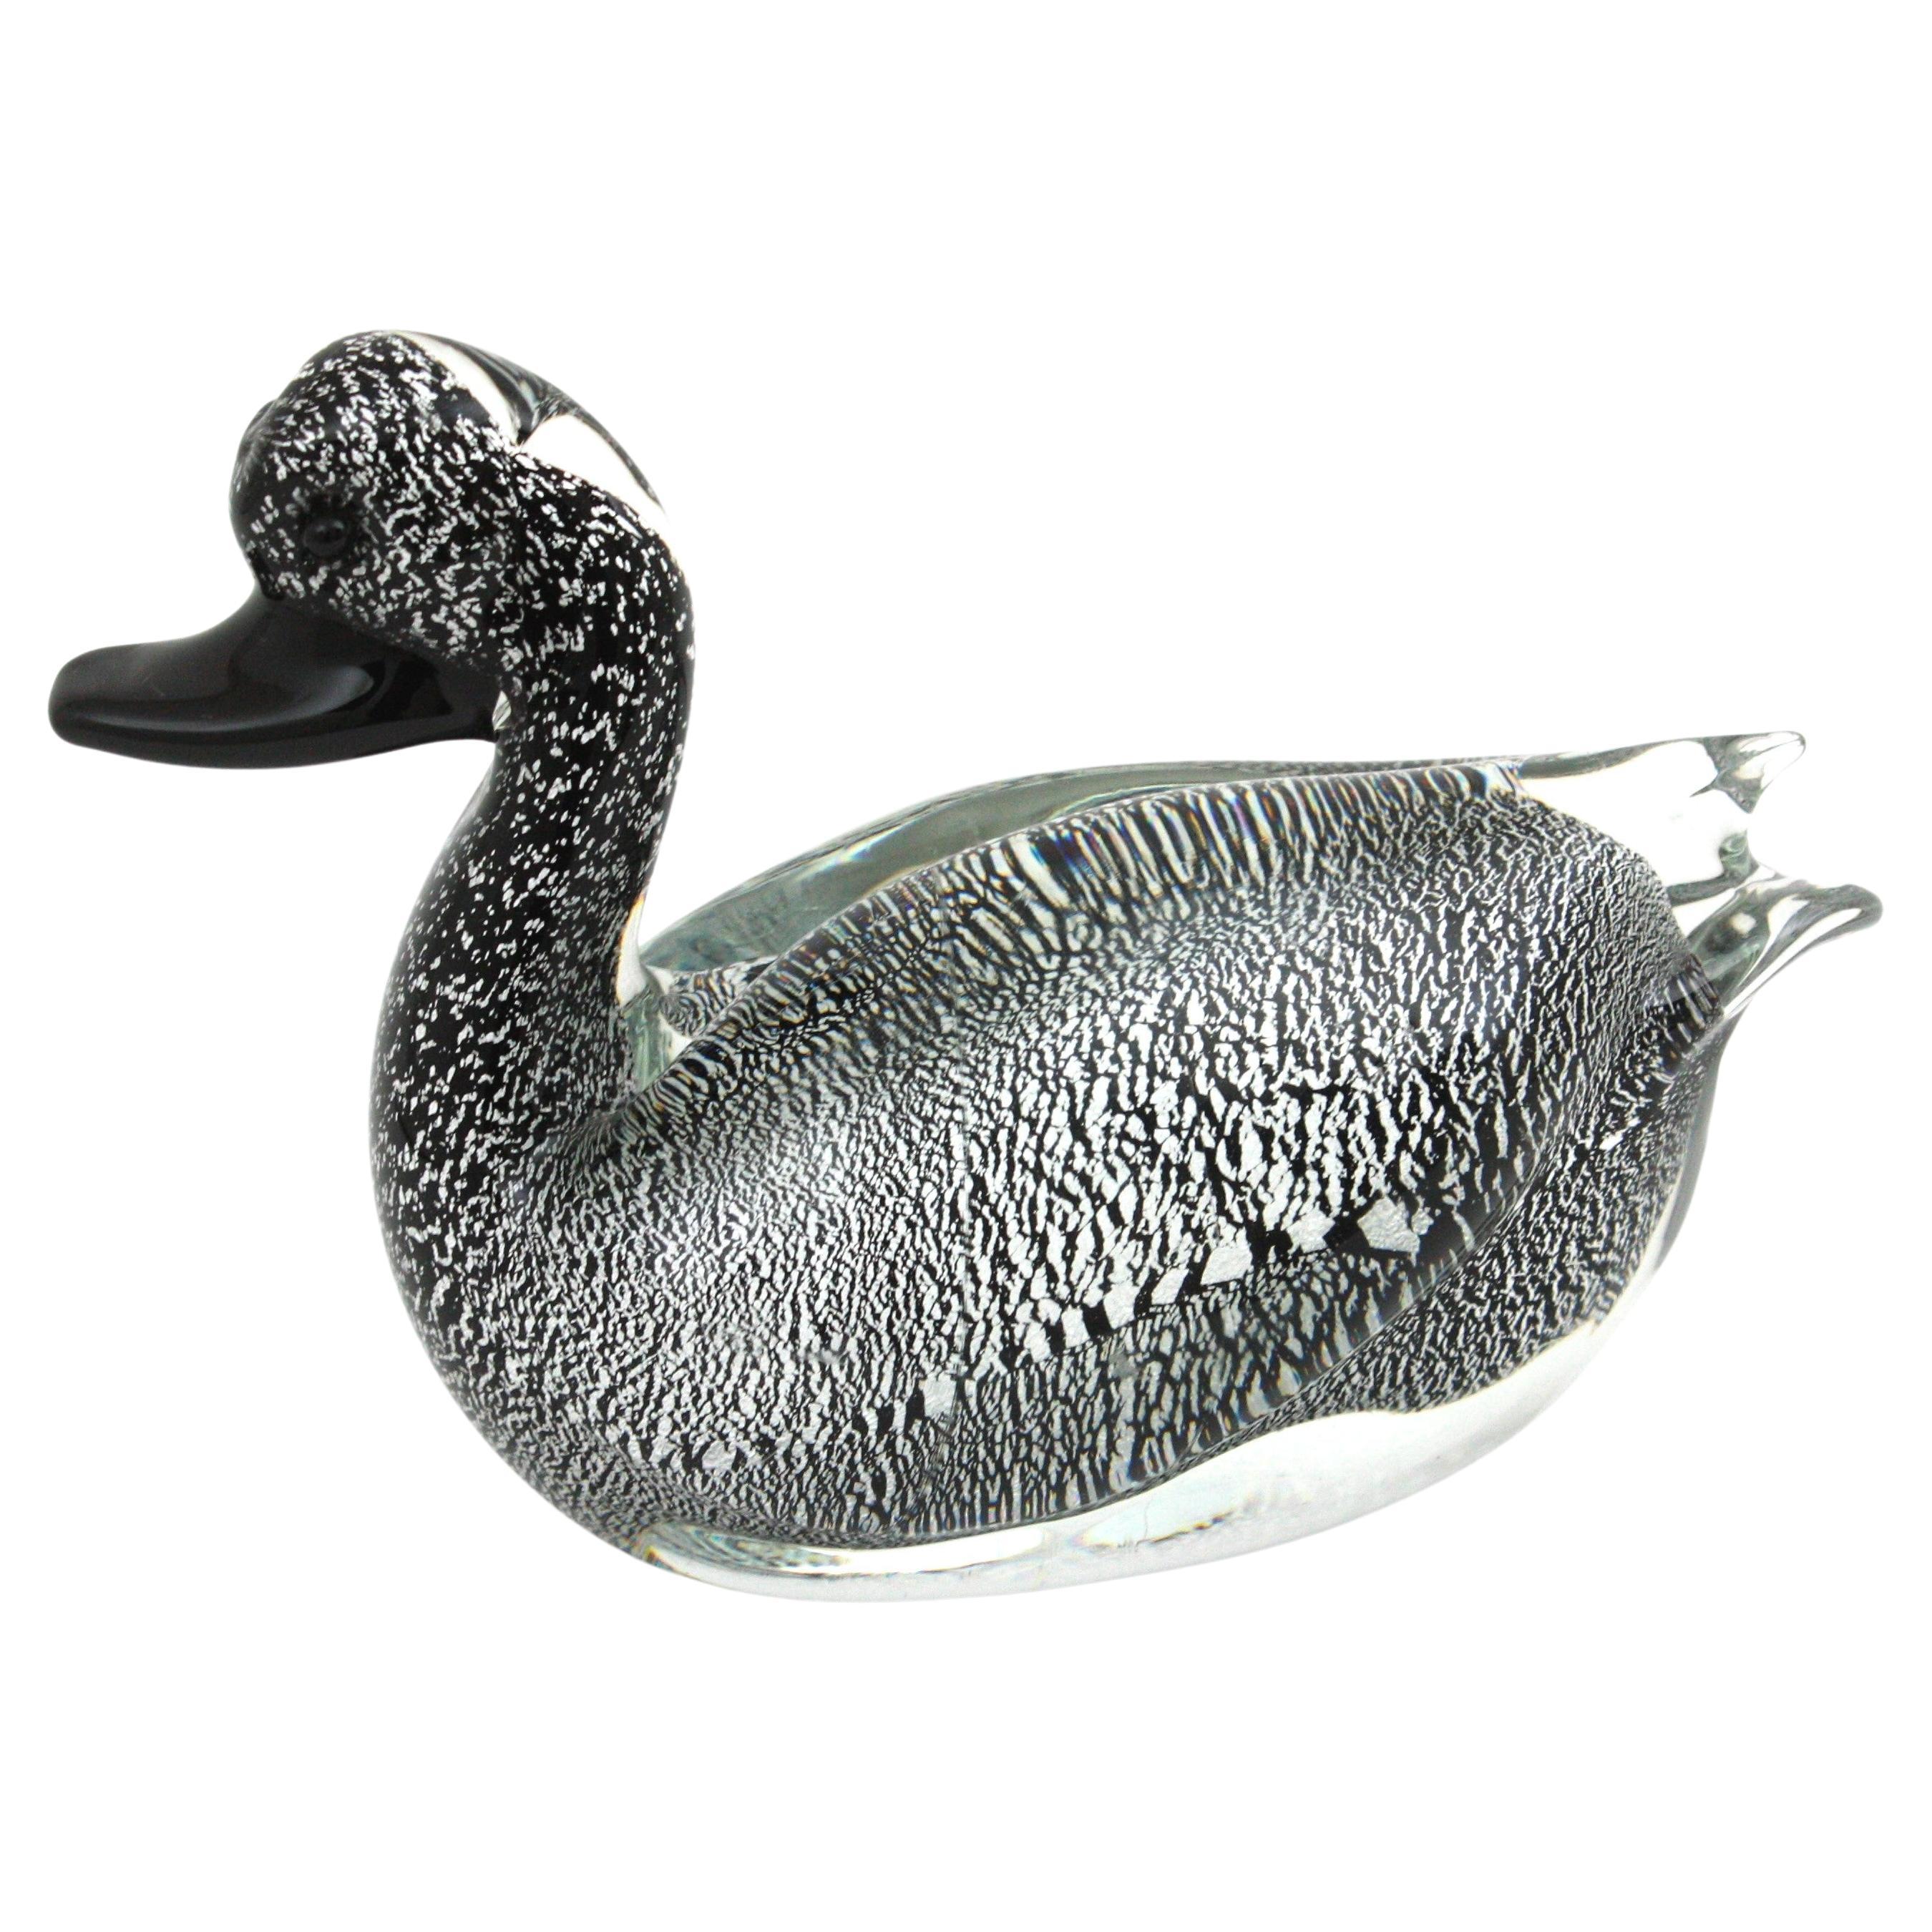  Murano Black Clear Duck Sculpture Art Glass Paperweight with Silver Flecks (Sculpture de canard en verre noir transparent avec des mouchetures d'argent) en vente